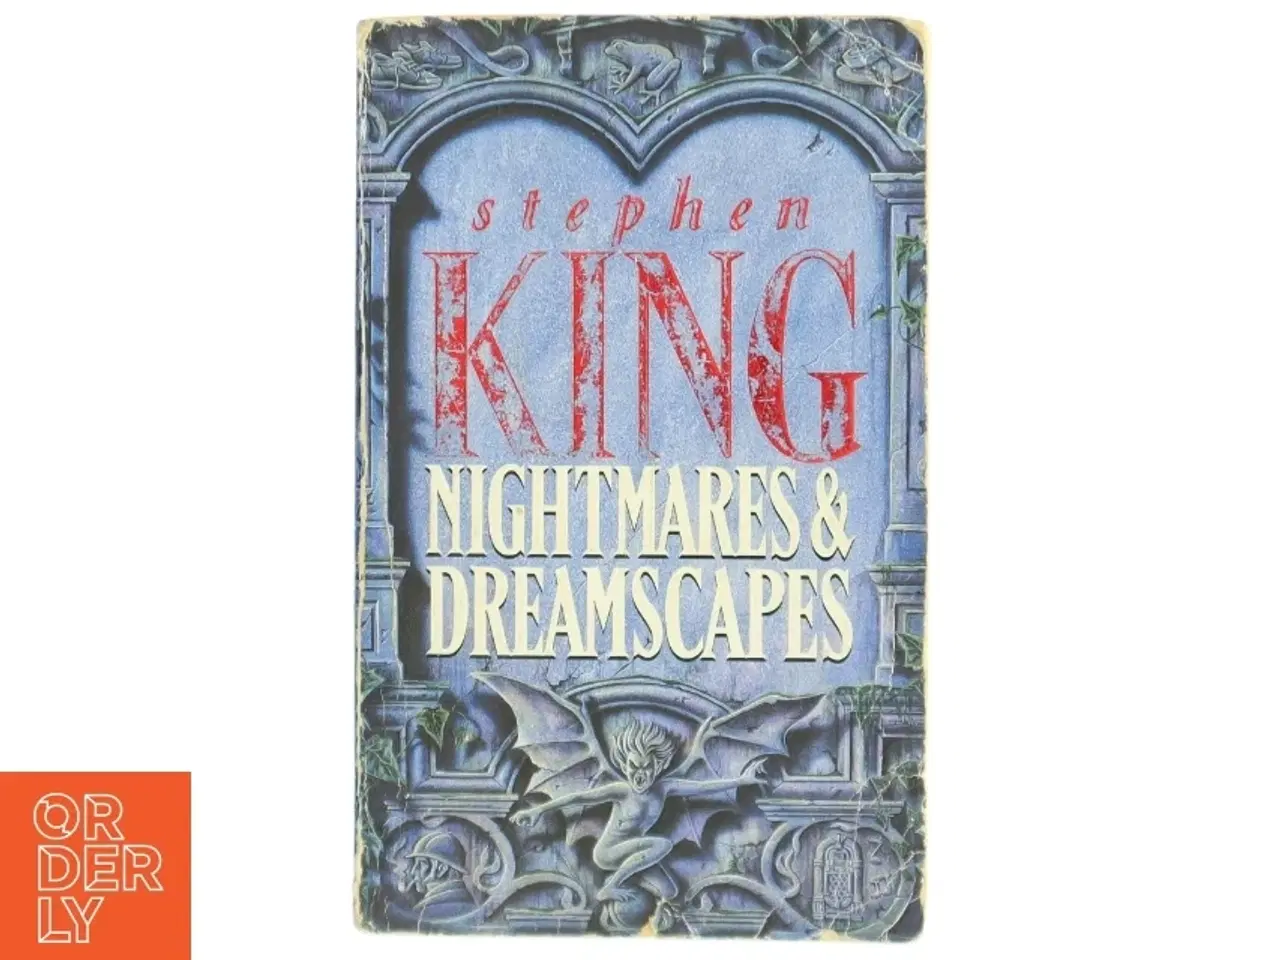 Billede 1 - Nightmares and dreamscapes af Stephen King (f. 1947) (Bog)